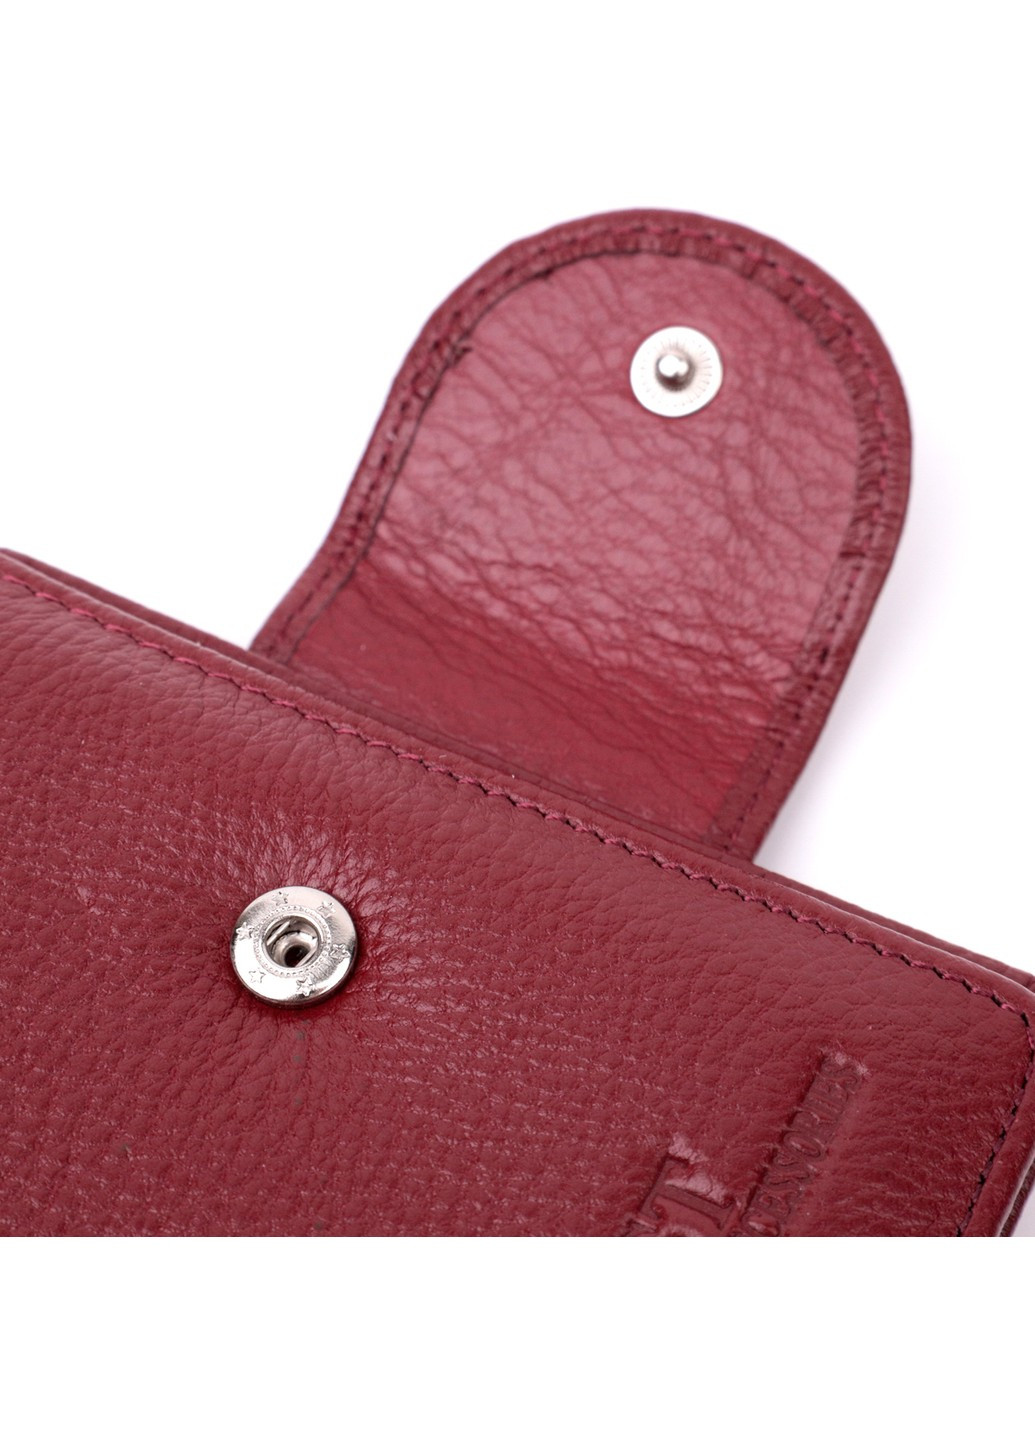 Женский кошелек вертикального типа из натуральной кожи 22452 Бордовый st leather (277980517)